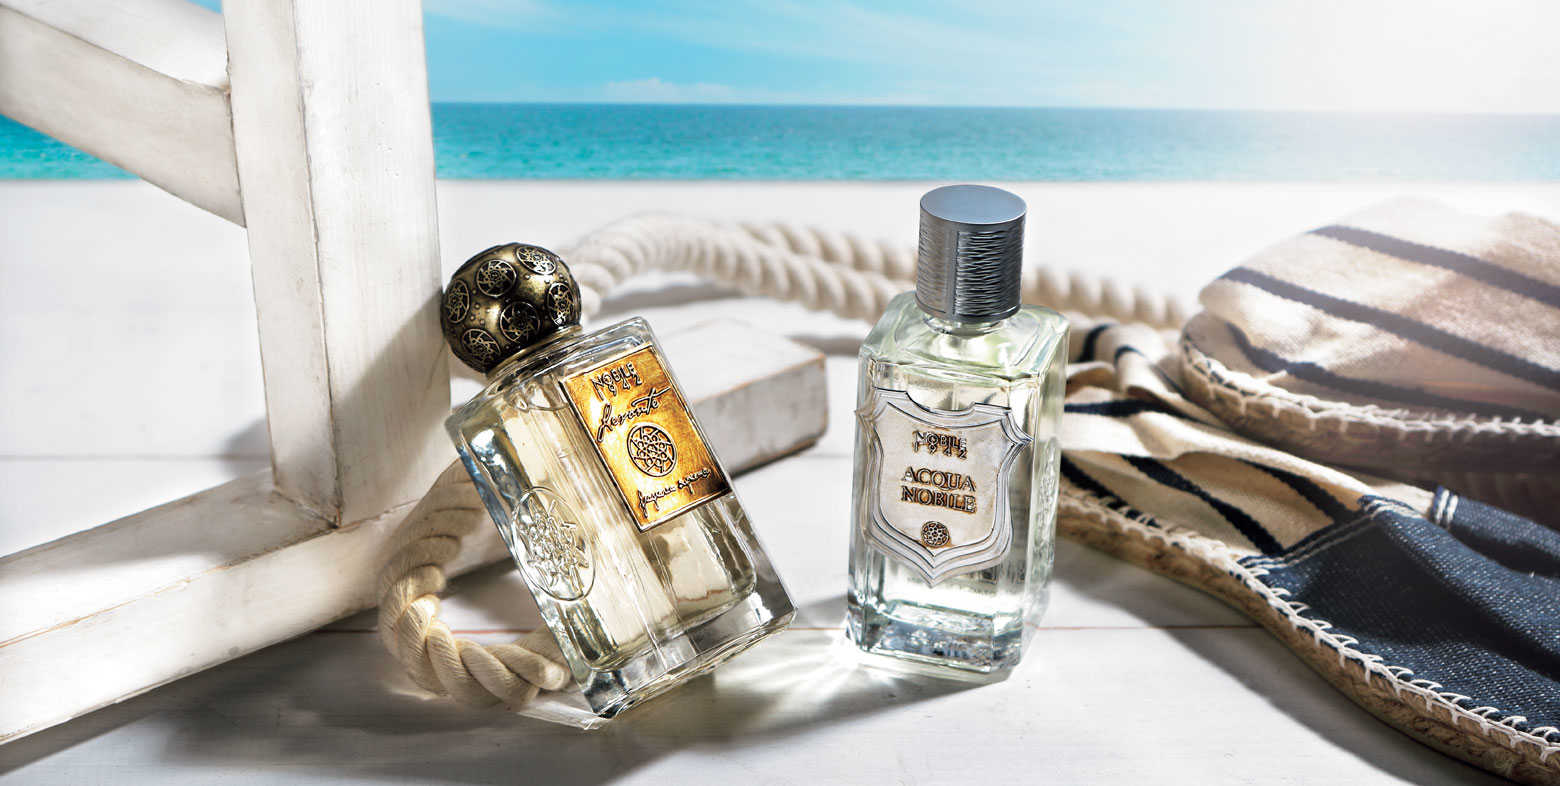 同じブランドでも 香り は大違い Vol 31 水 と 風 の爽やかで 透明感のある香水に注目 Lifestyle Safari Online